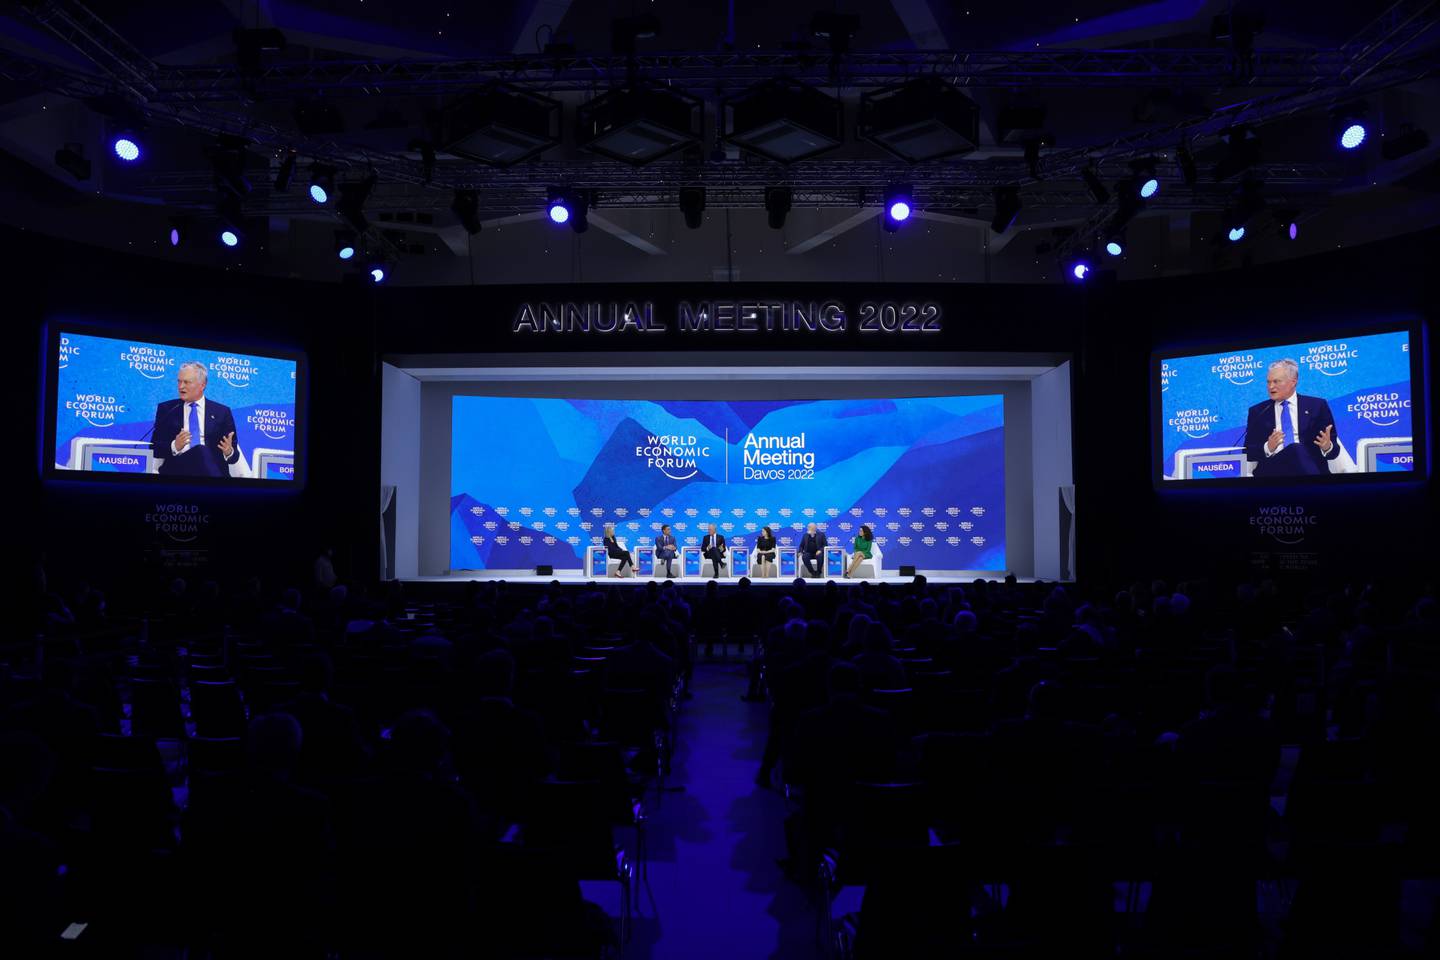 La reunión anual de Davos entre líderes políticos, altos ejecutivos y celebridades se lleva a cabo del 22 al 26 de mayo.